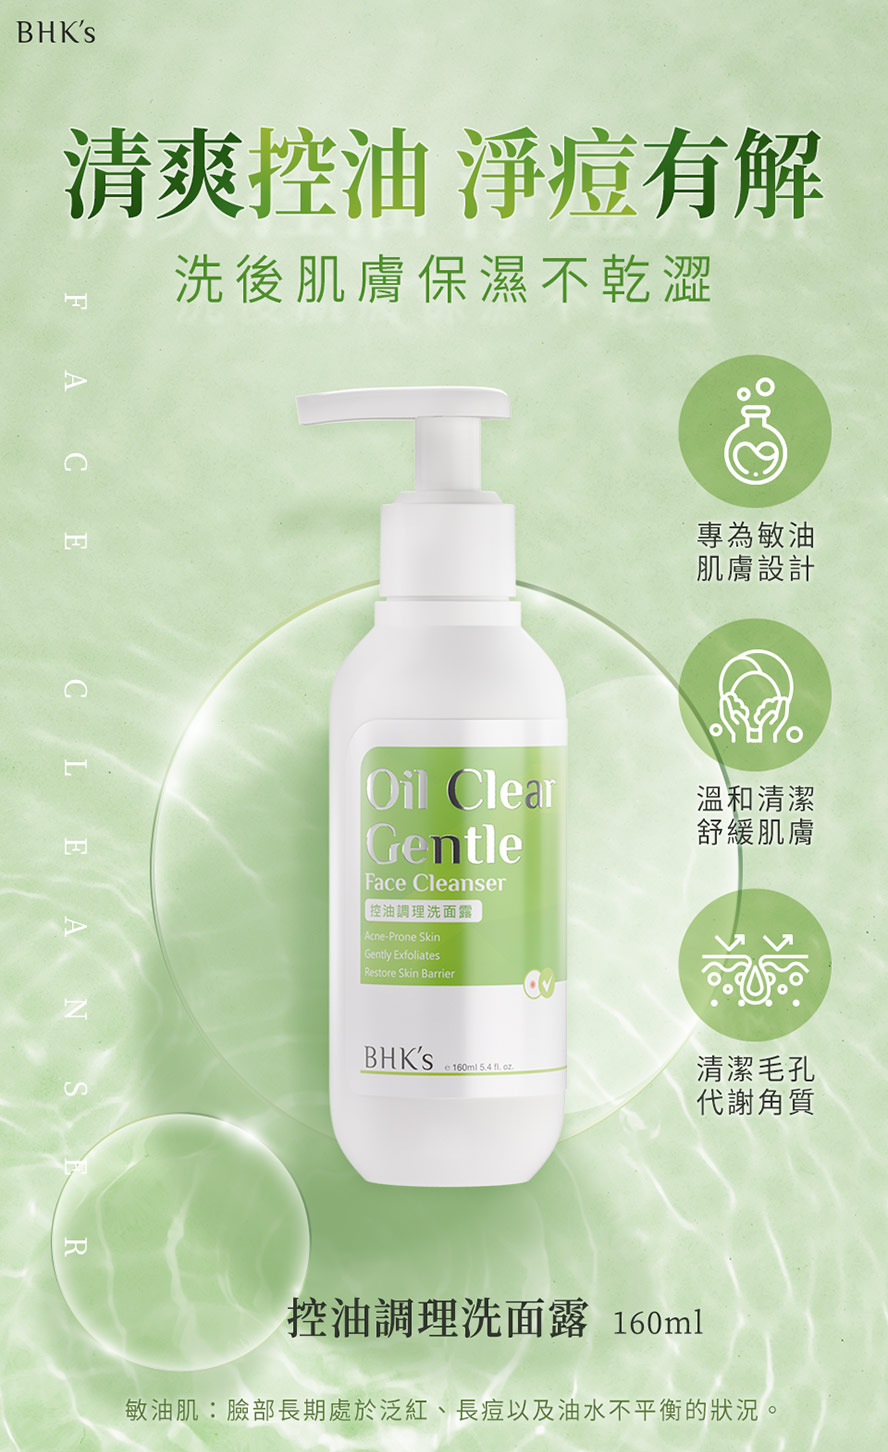 BHK's控油調理洗面露適合敏油肌、痘痘肌使用。